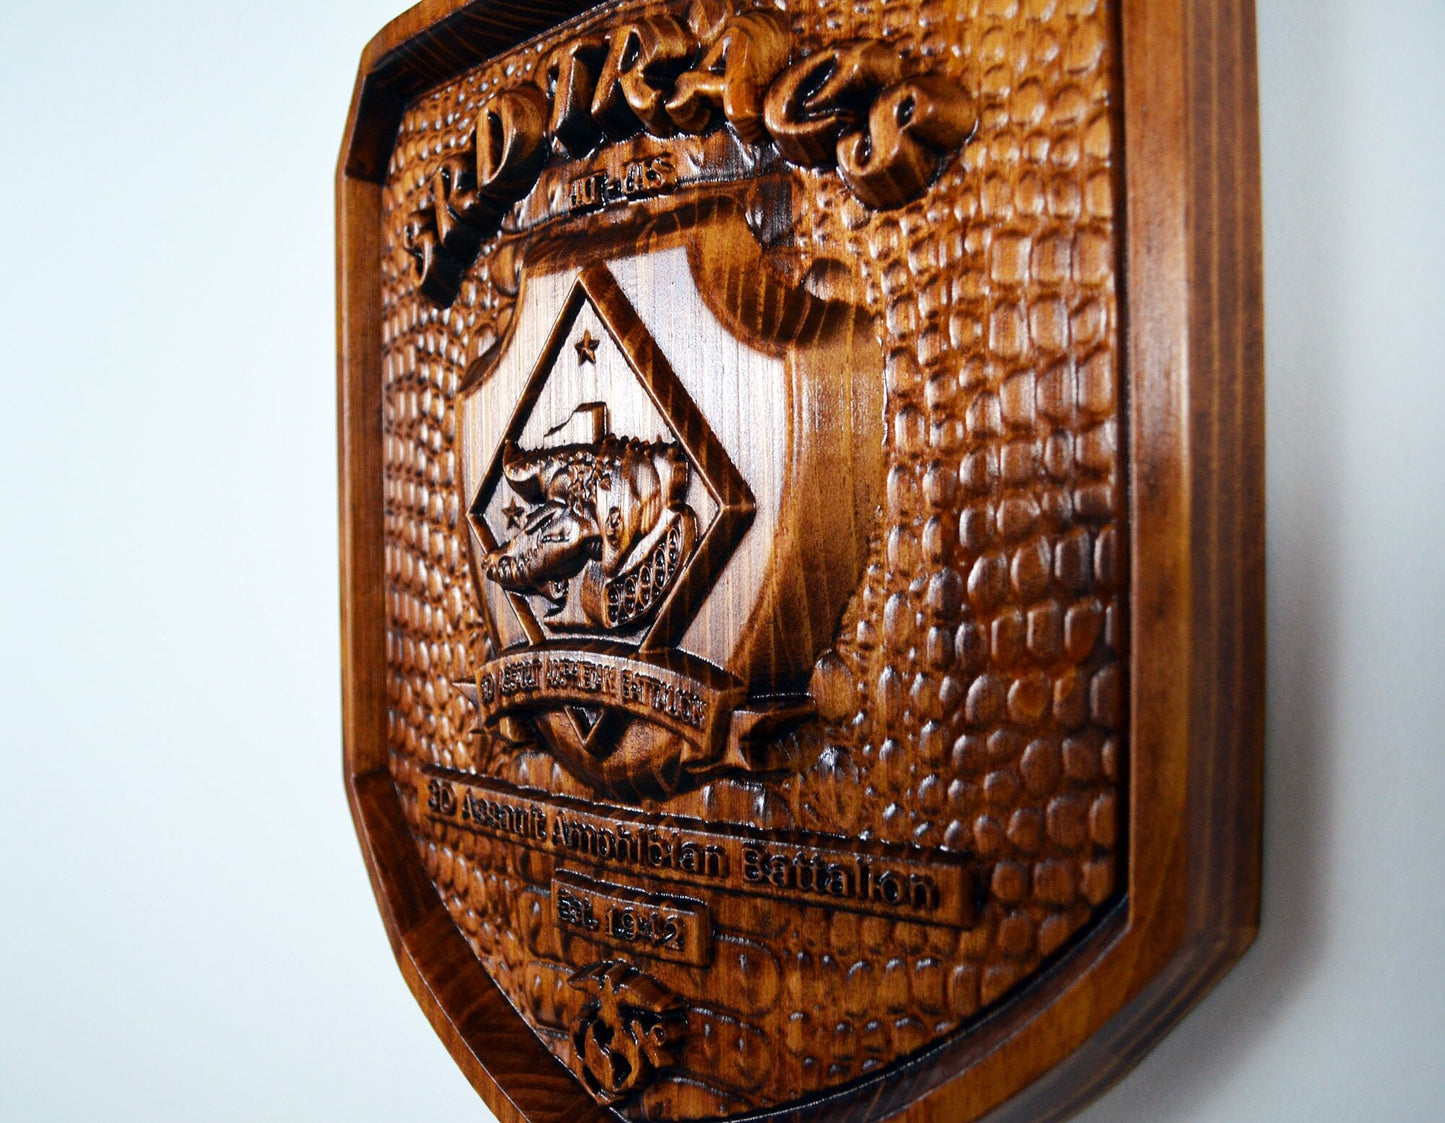 USMC 3rd Assault Amphibian Battalion, 3d wood carving, military plaque, armor style